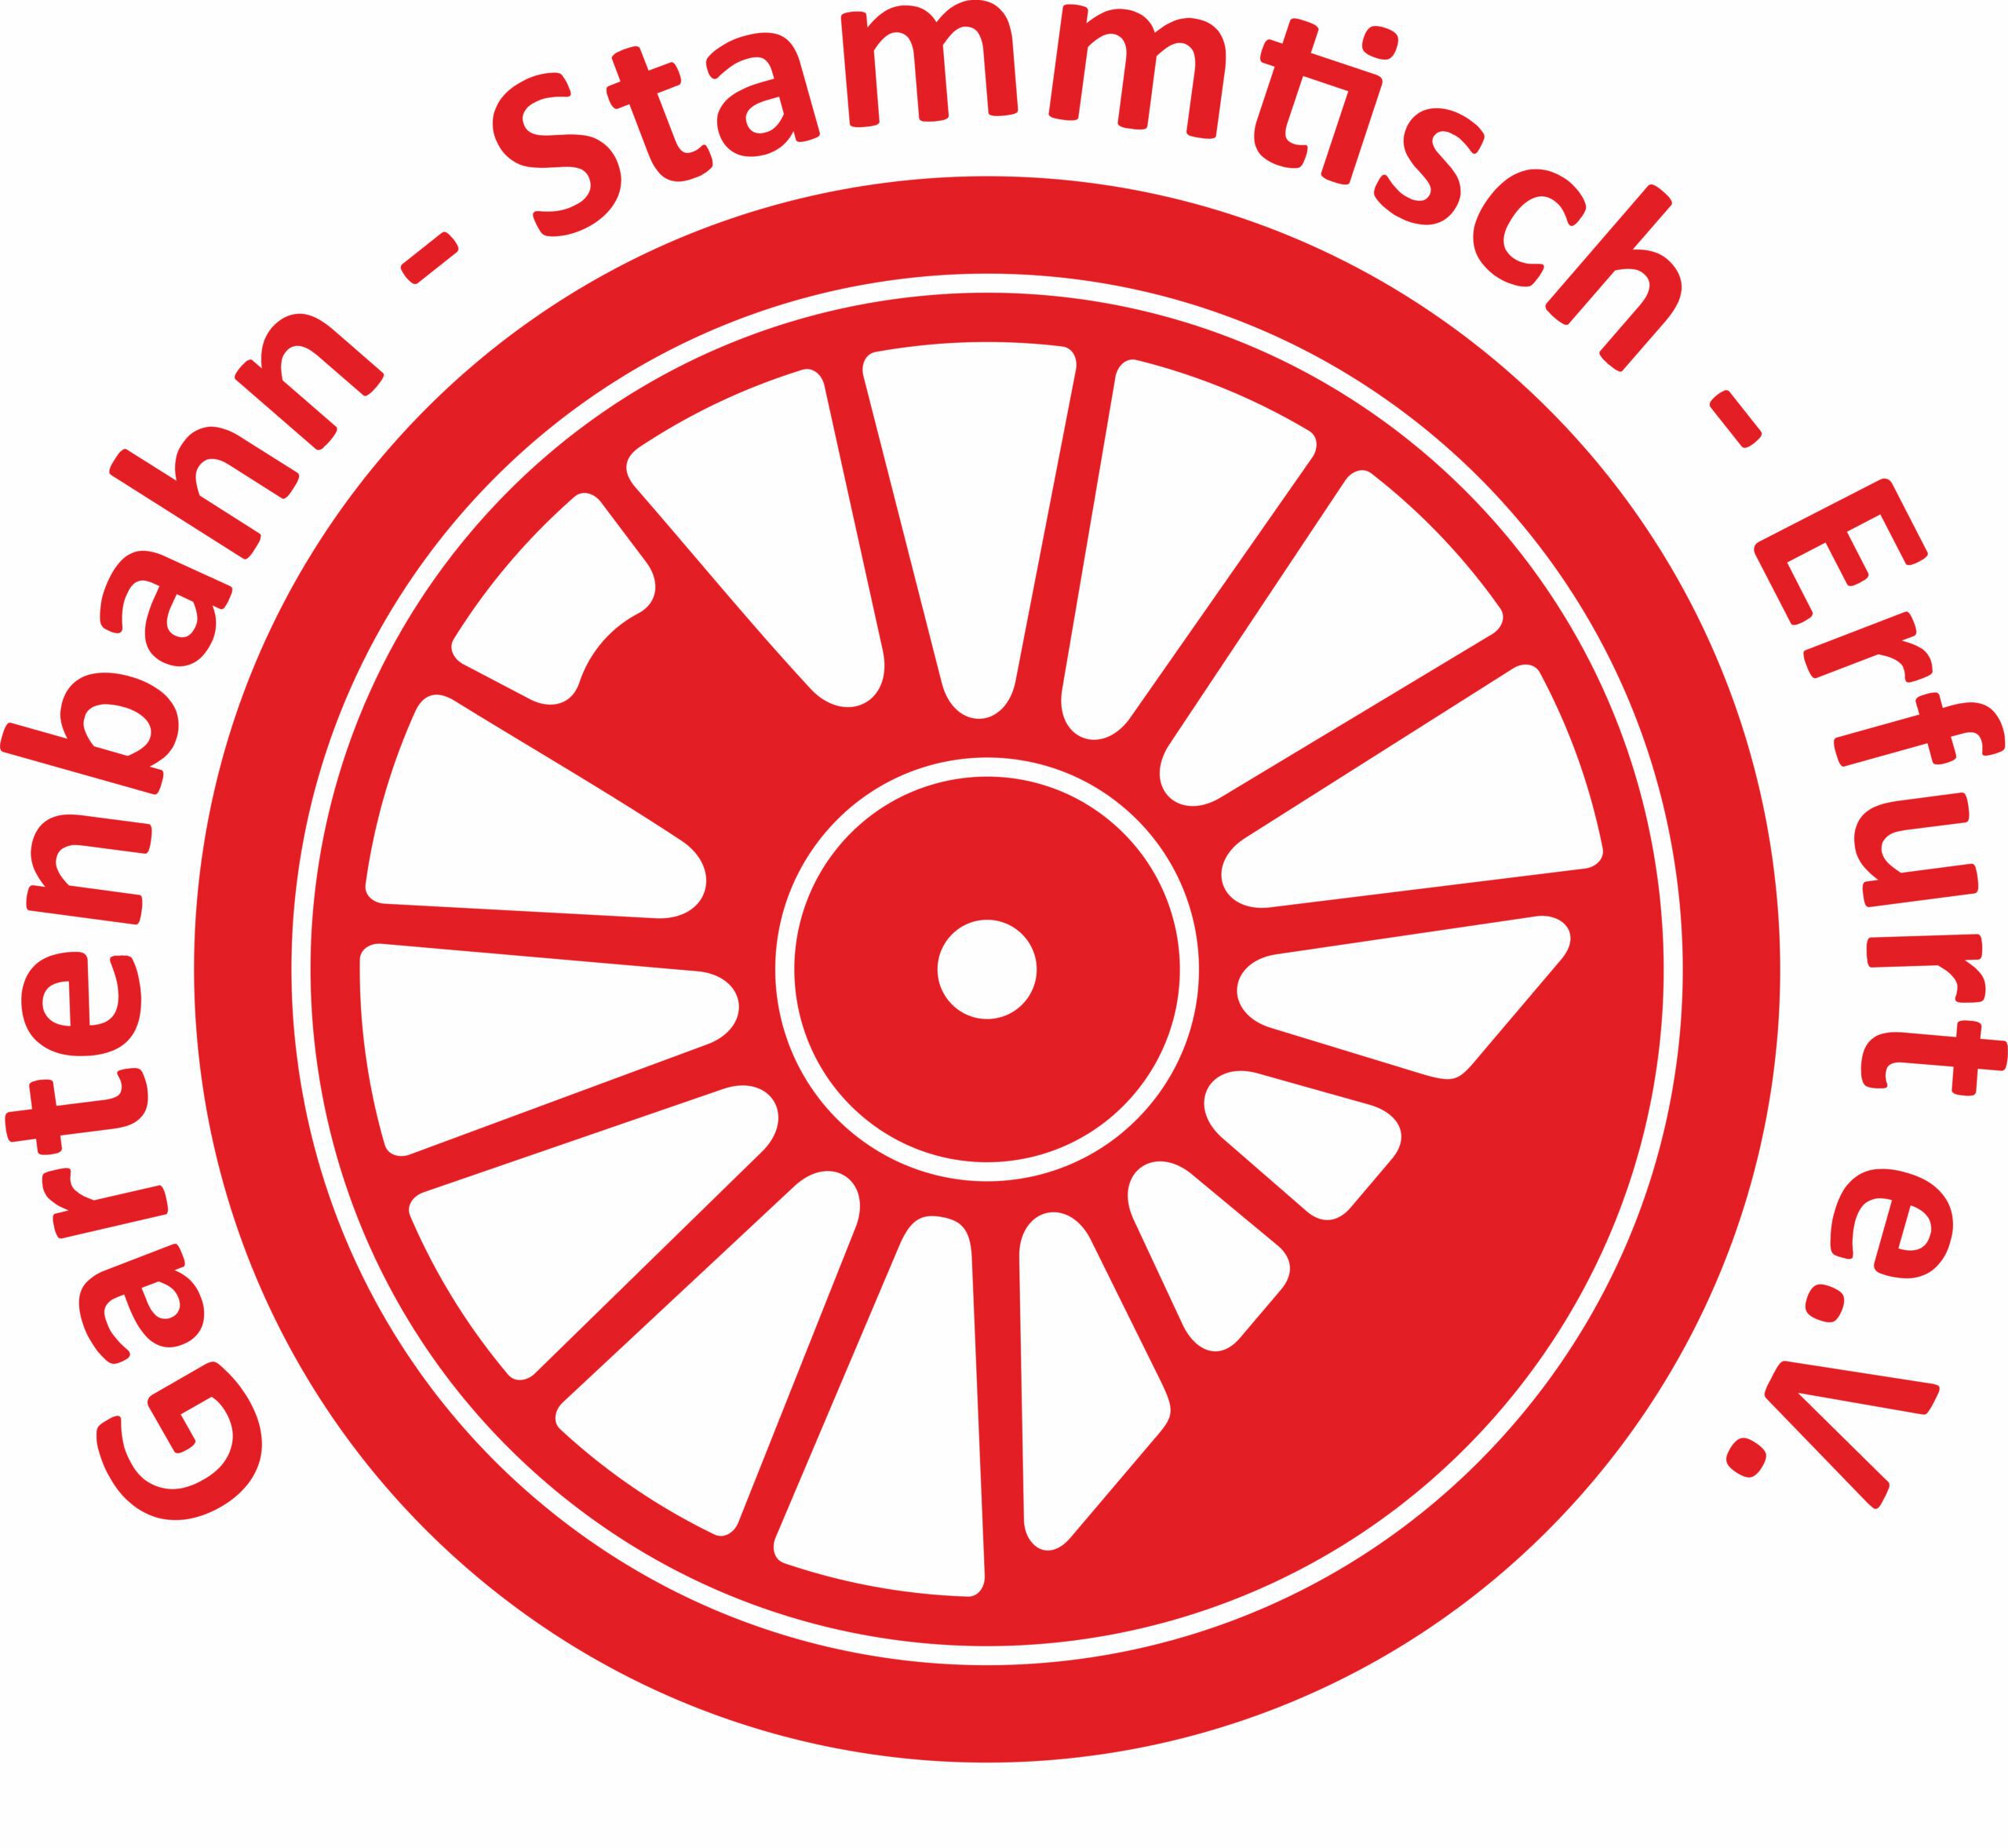 Gartenbahn - Stammtisch - Erfurt e.V.